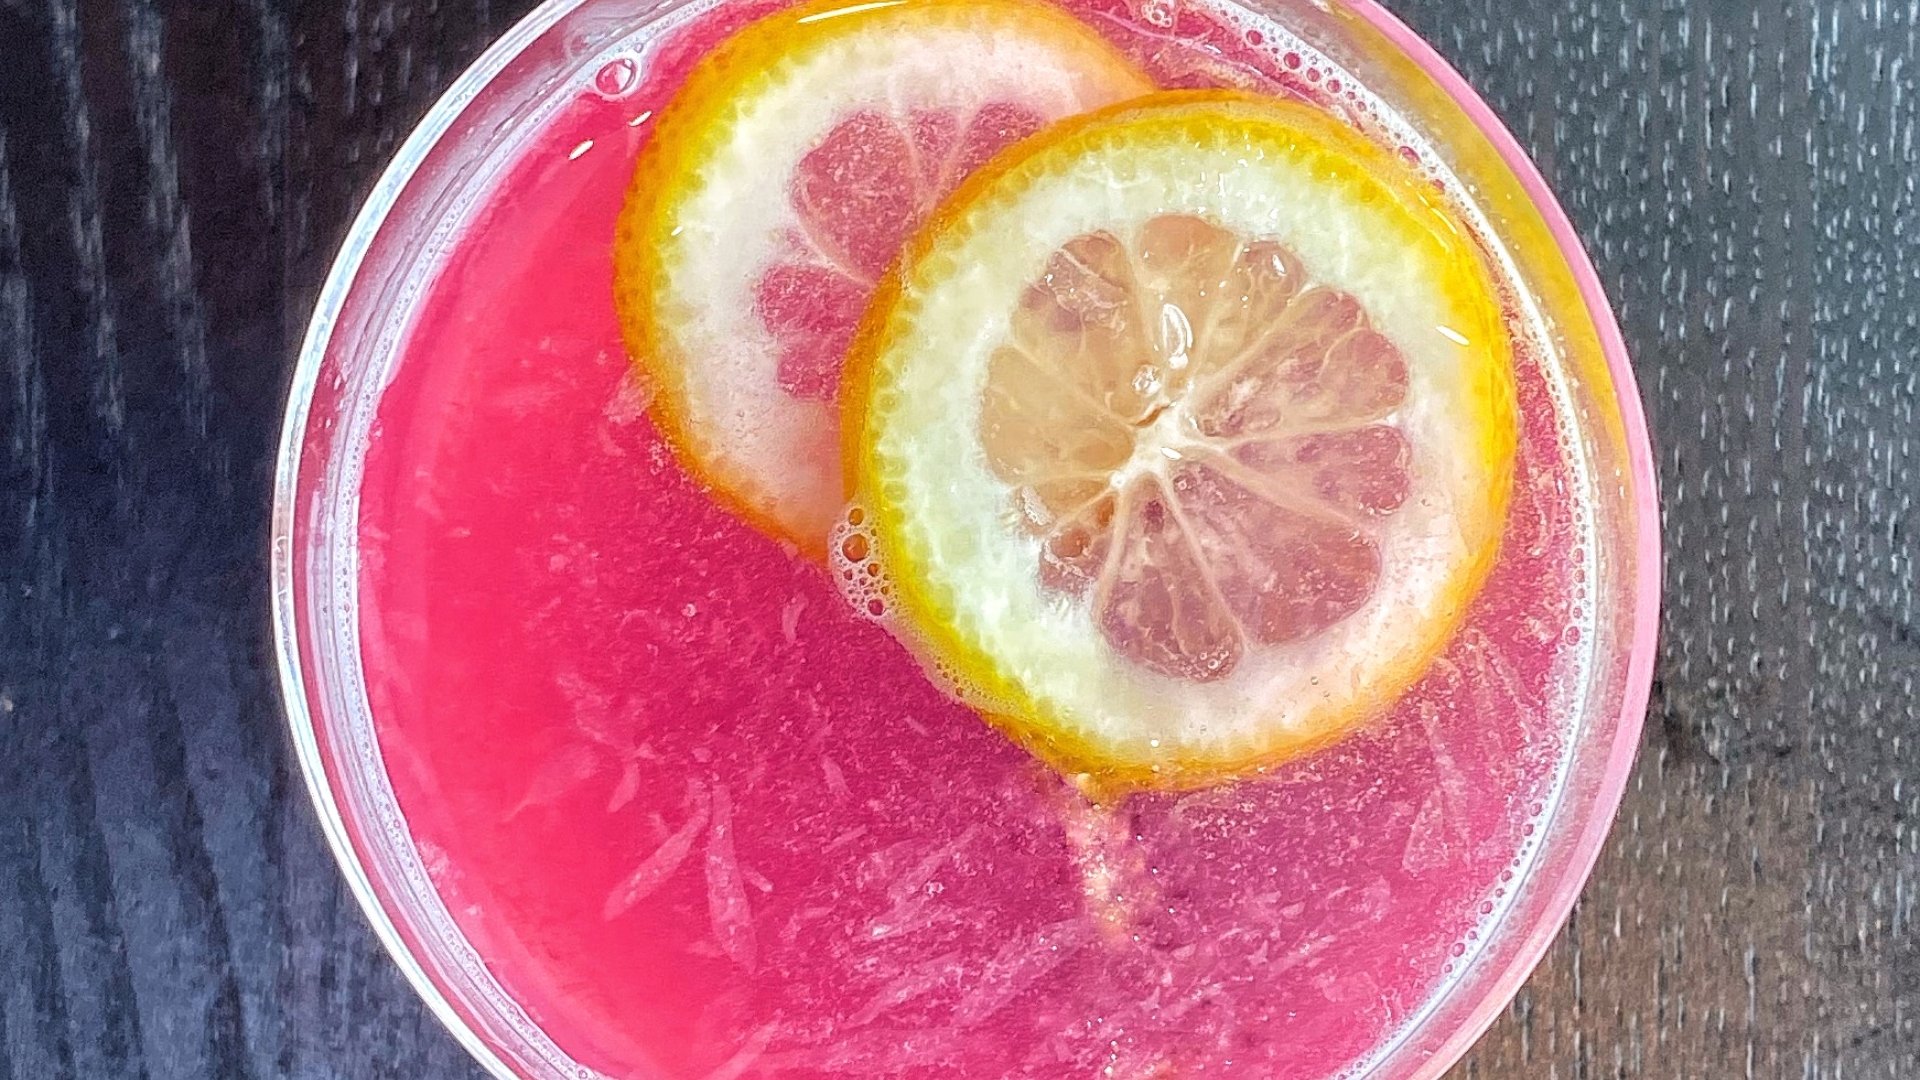 Easy pink lemonade